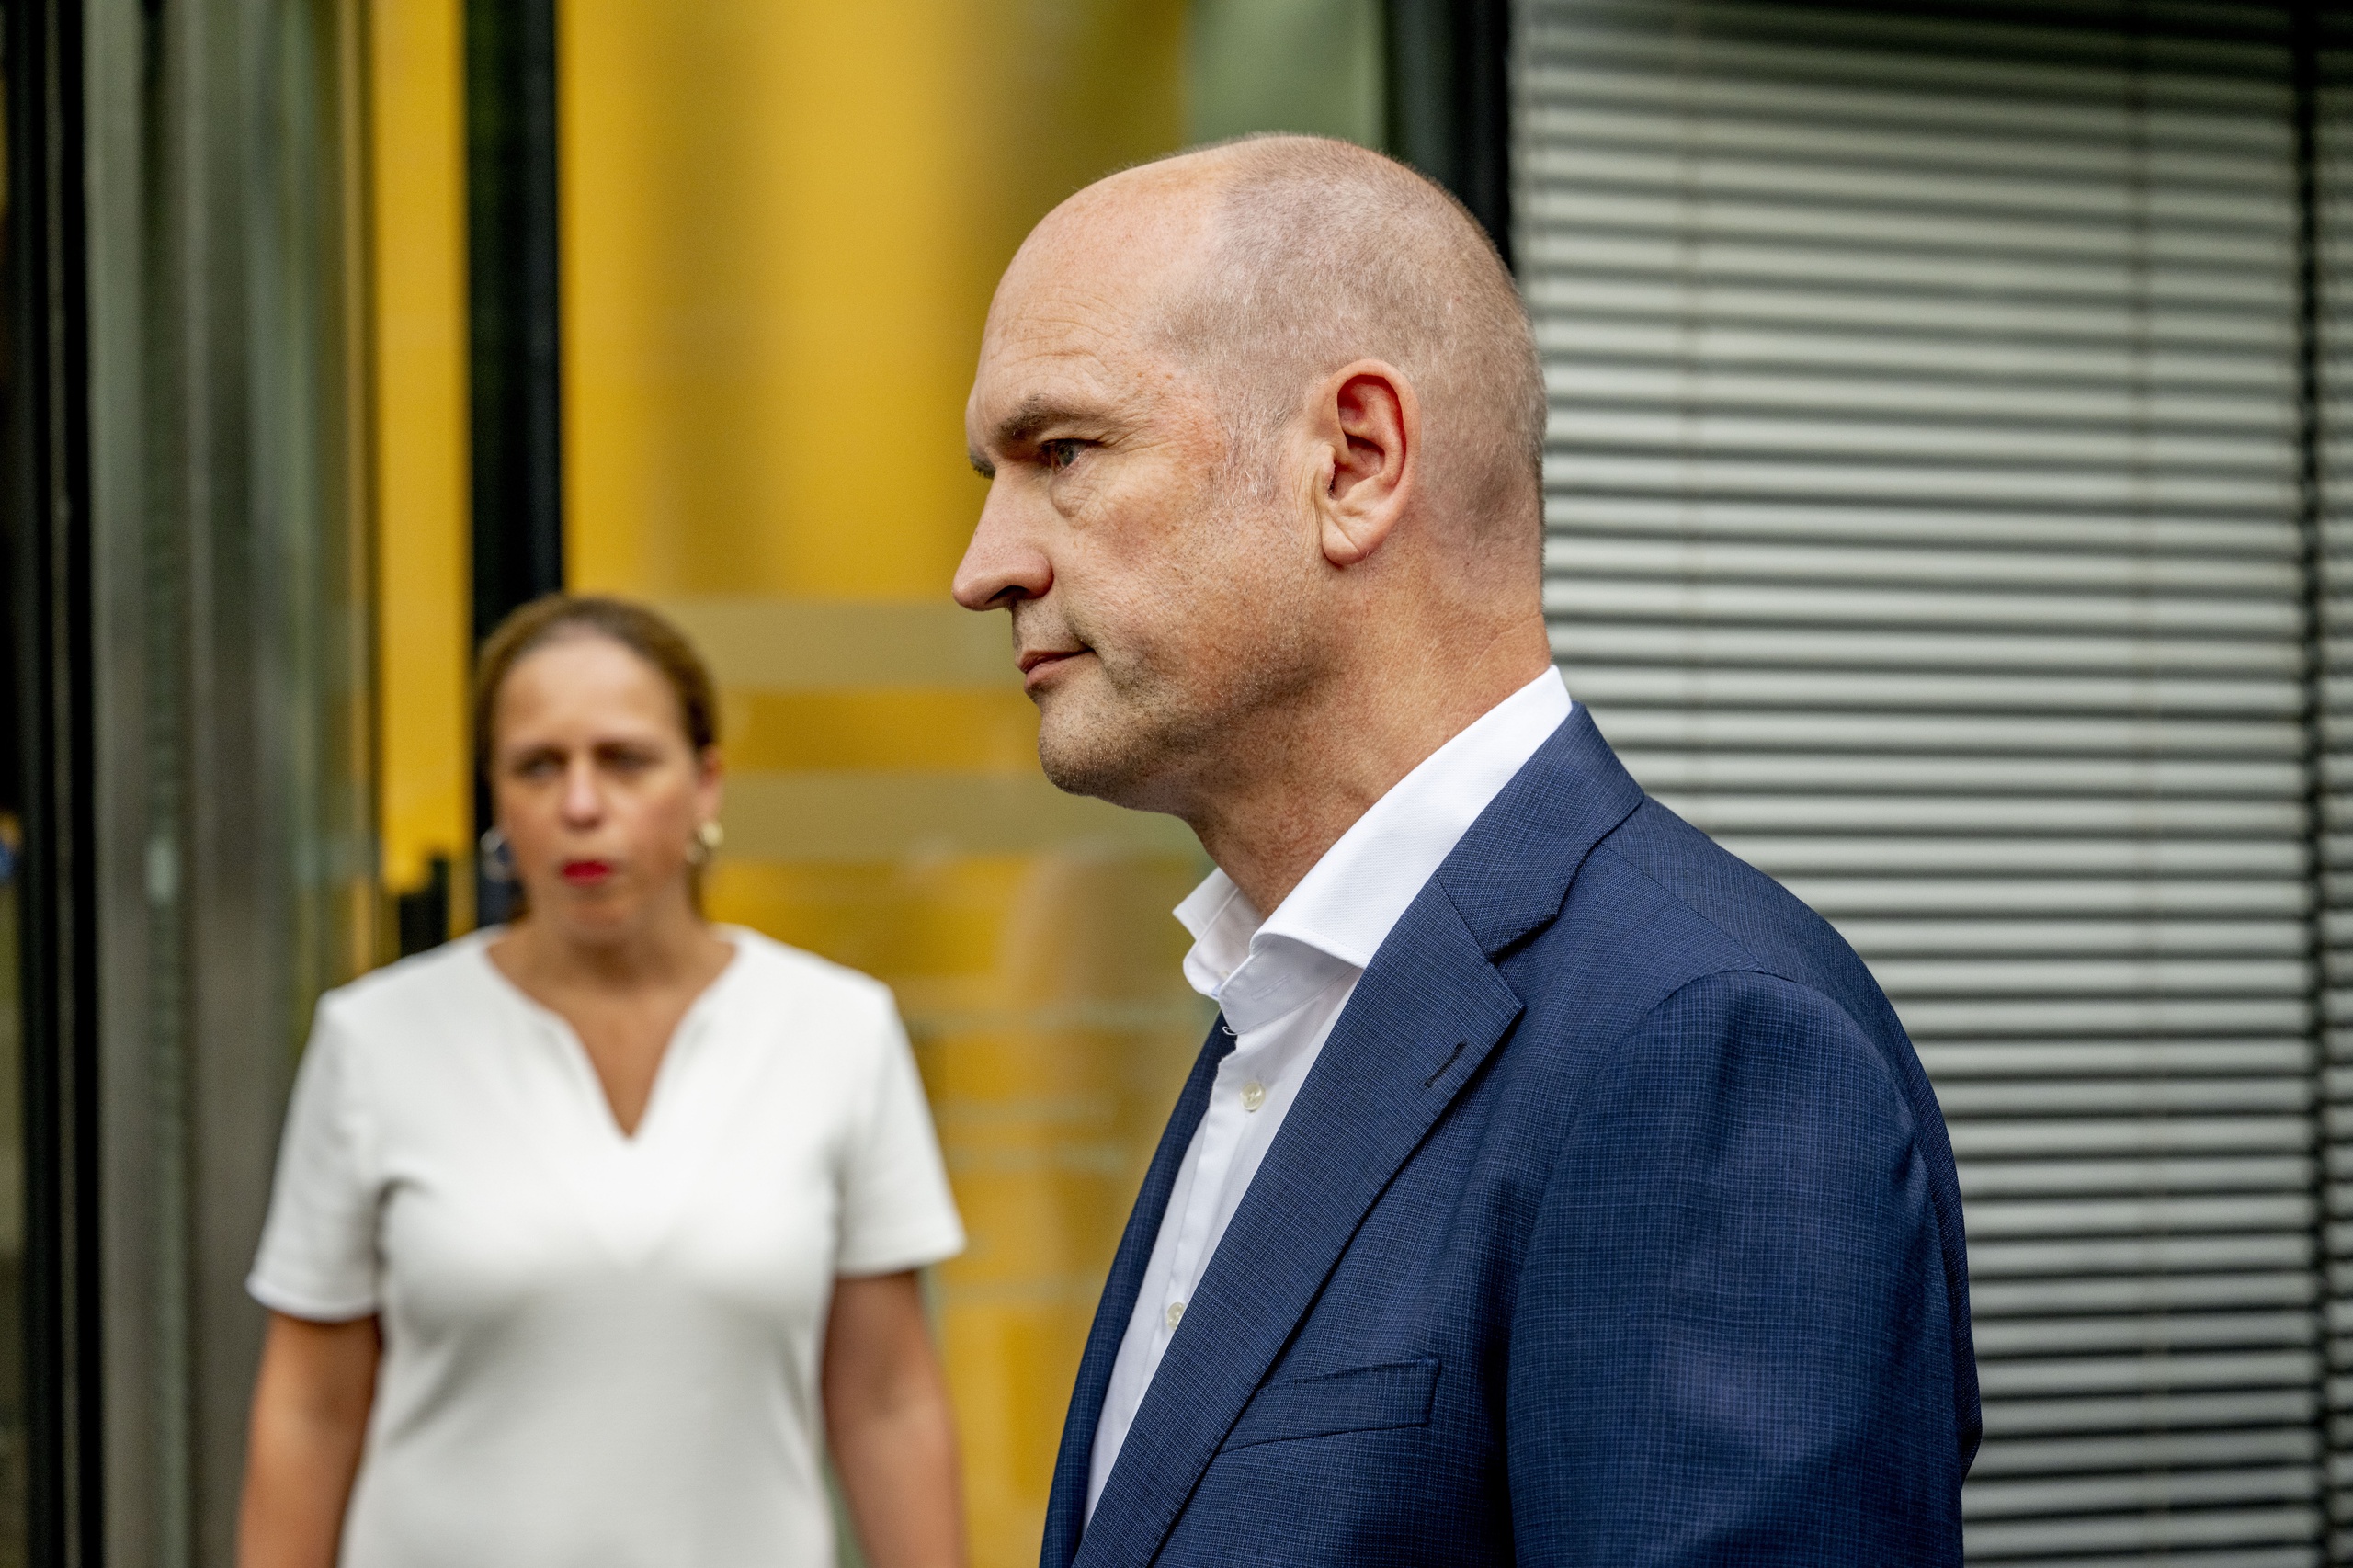 Gert-Jan Segers en Carola Schouten komen aan bij het ministerie van Financiën voor een overleg tussen het kabinet met coalitiepartijen over de begroting van volgend jaar.